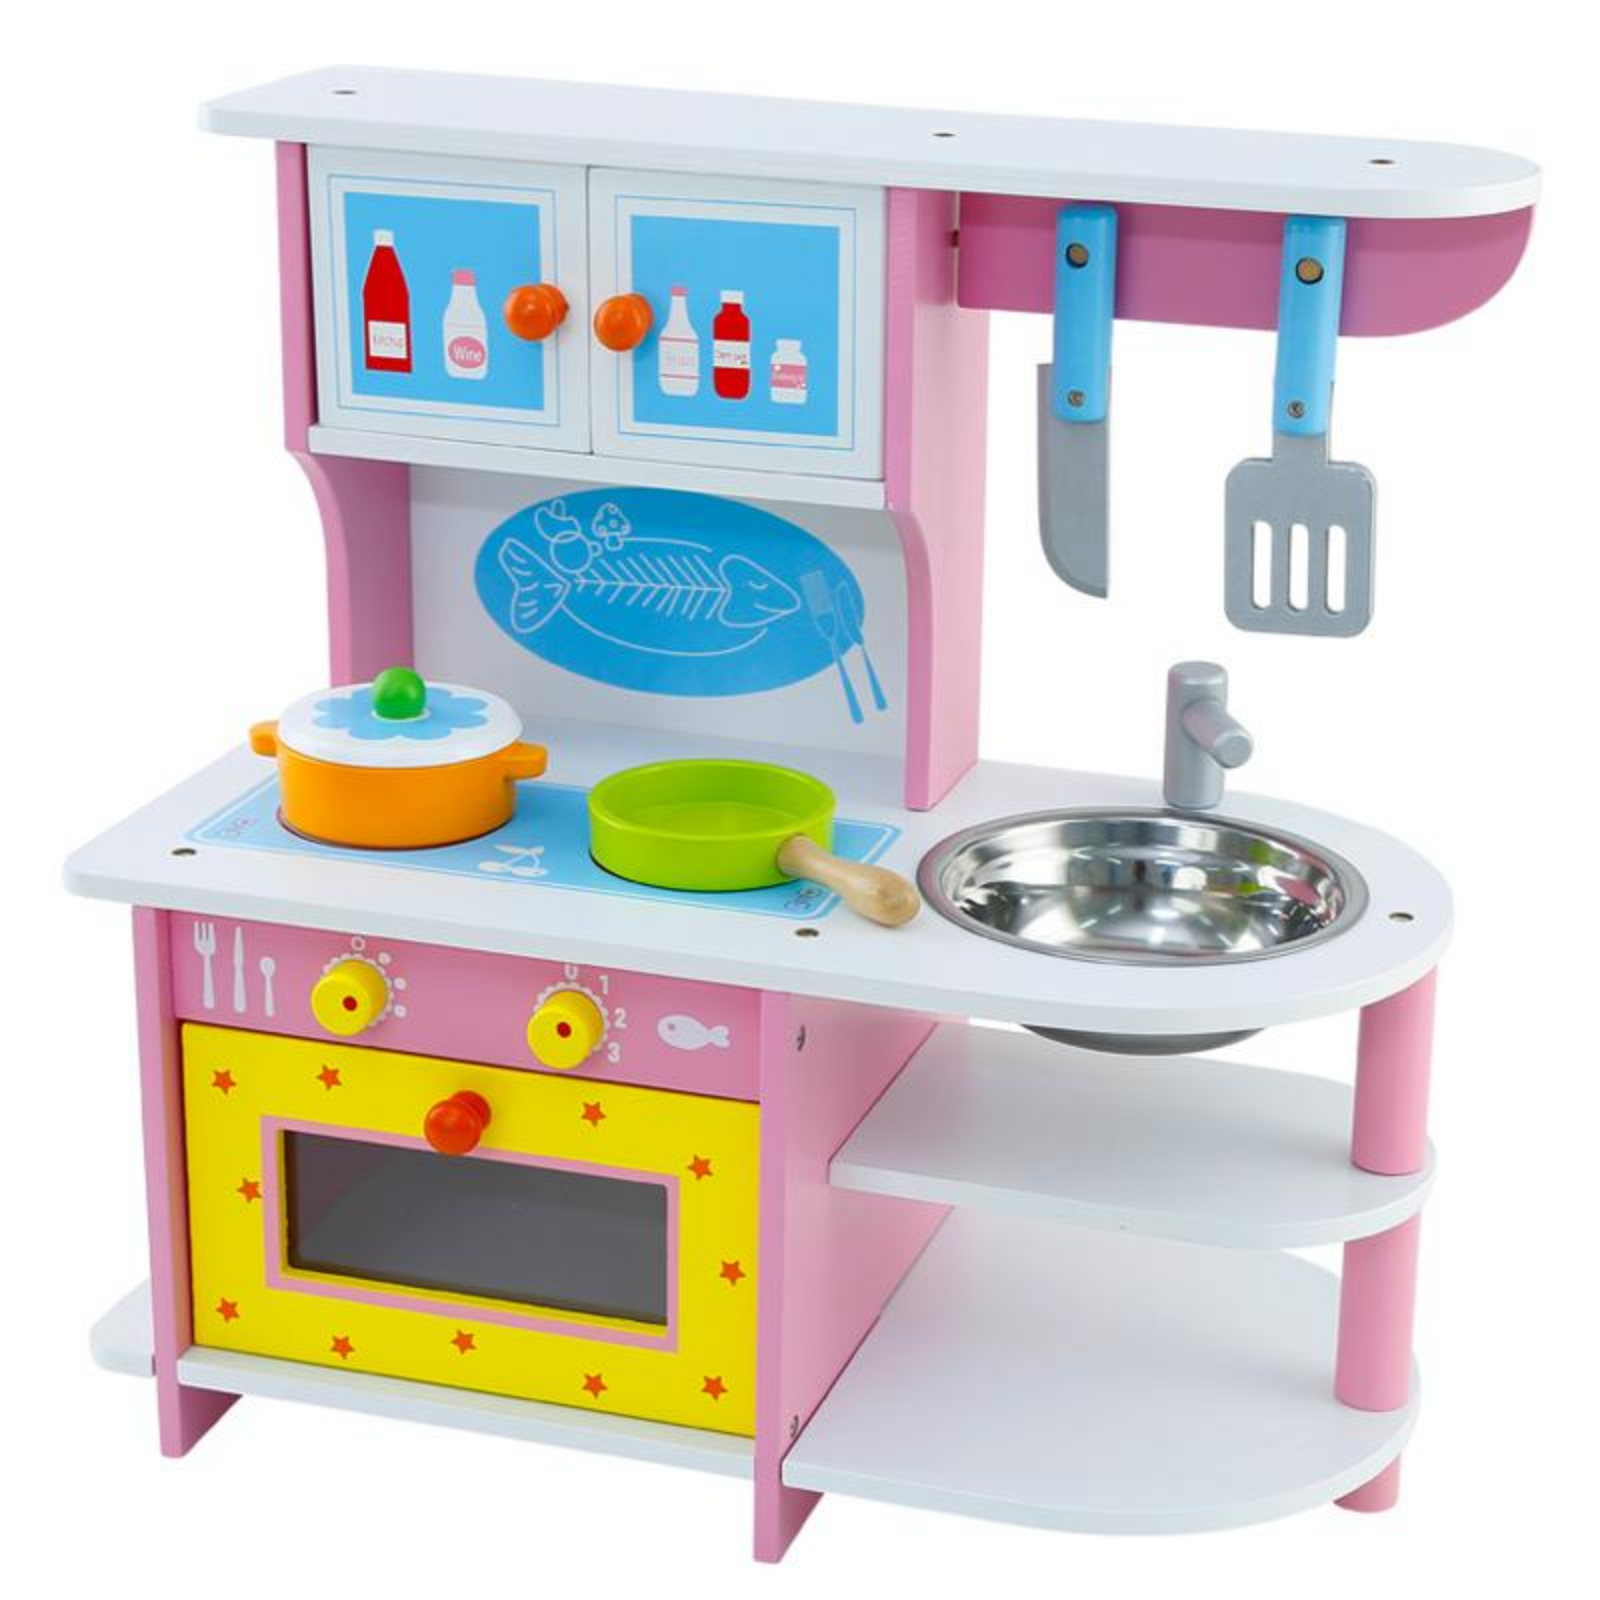 Bucatarie din lemn pentru copii, roz cu cuptor, aragaz, chiuveta si ustensile [0]